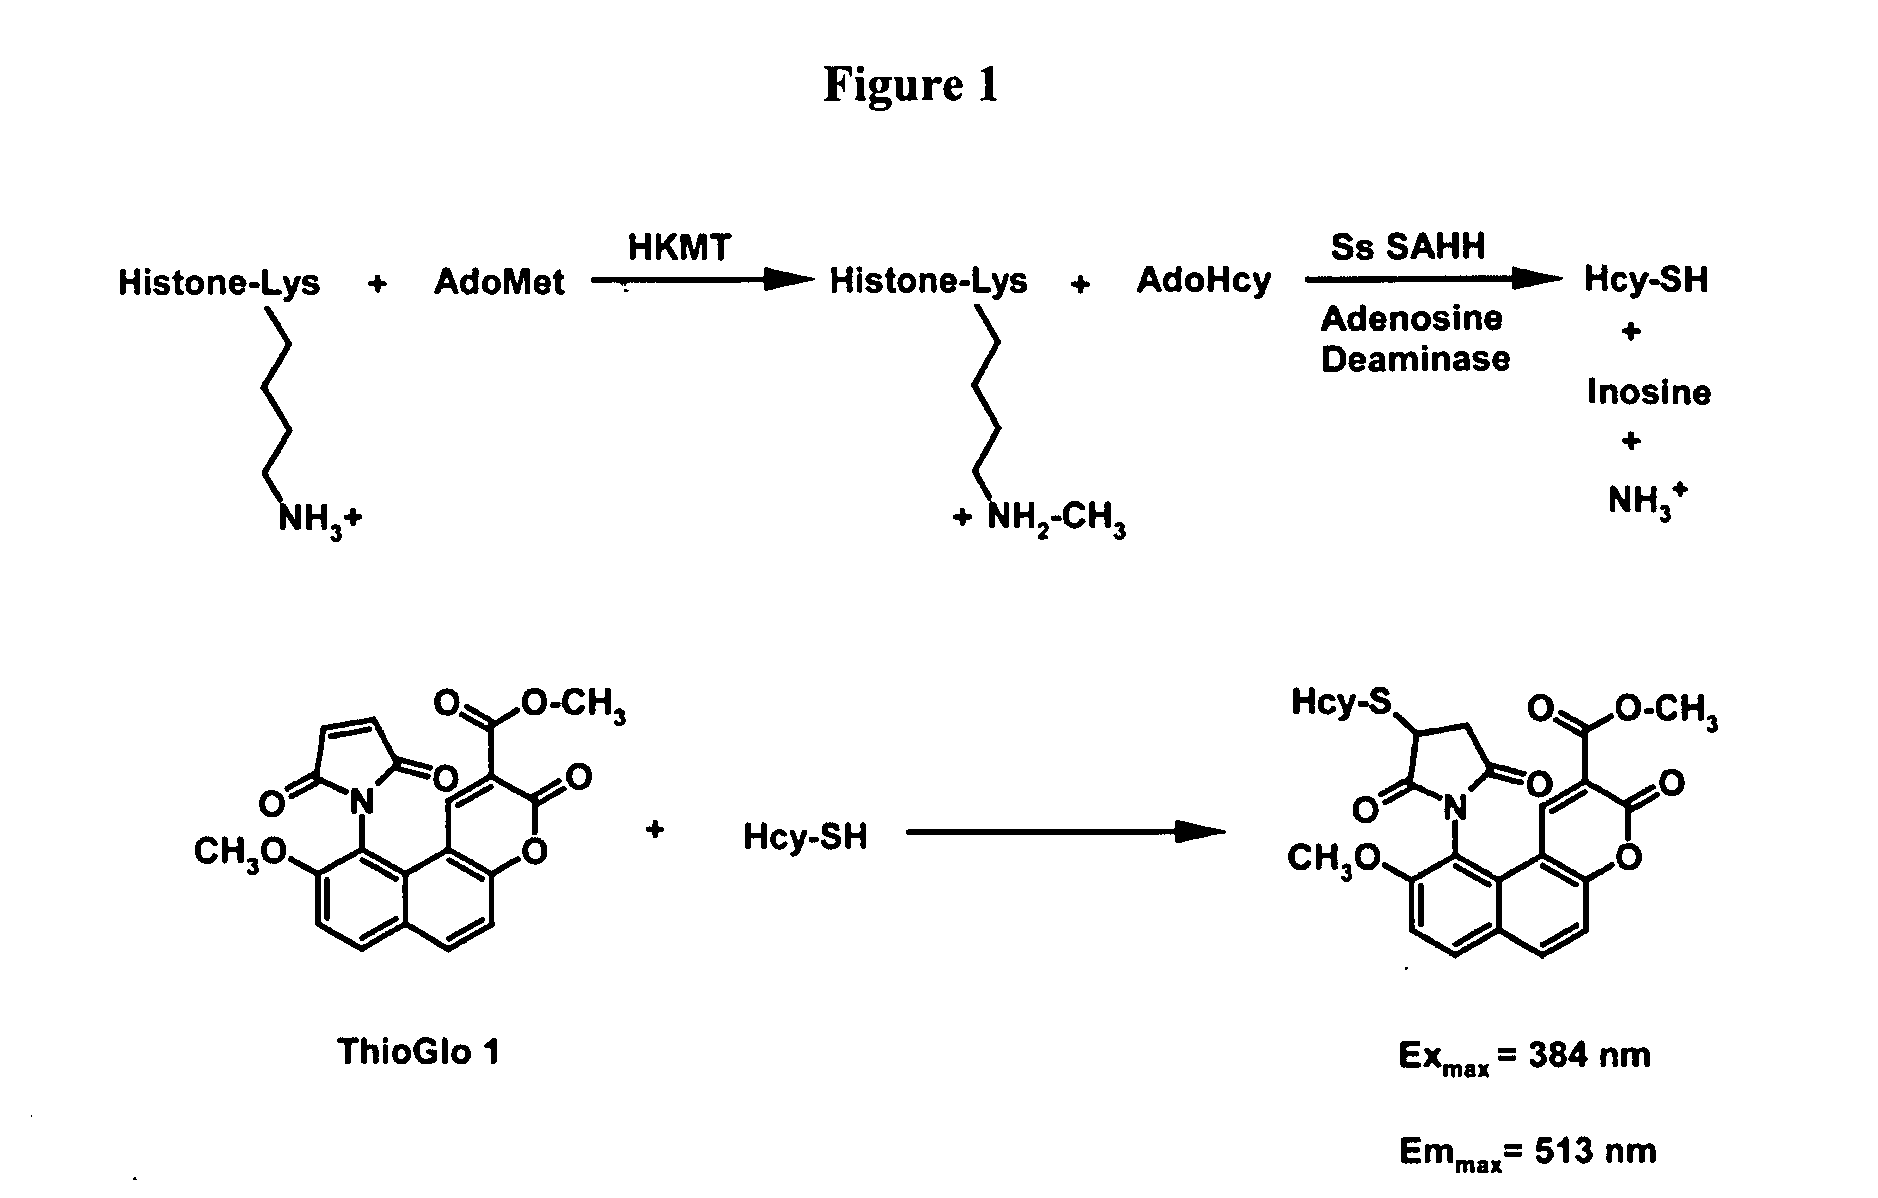 Methyltransferase assays